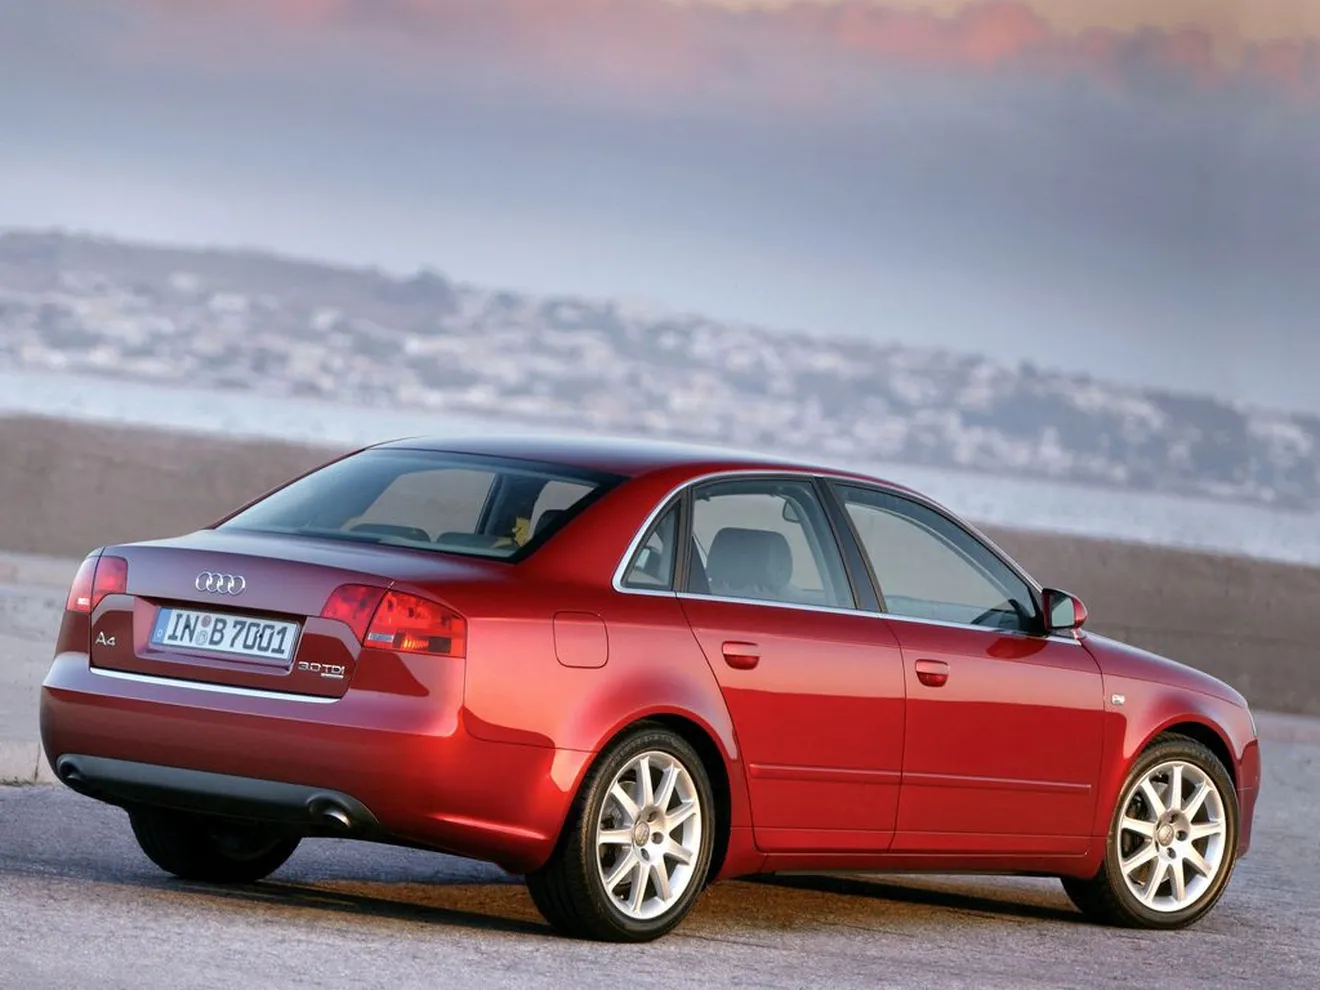 Audi A4, así han cambiado sus motores con el downsizing